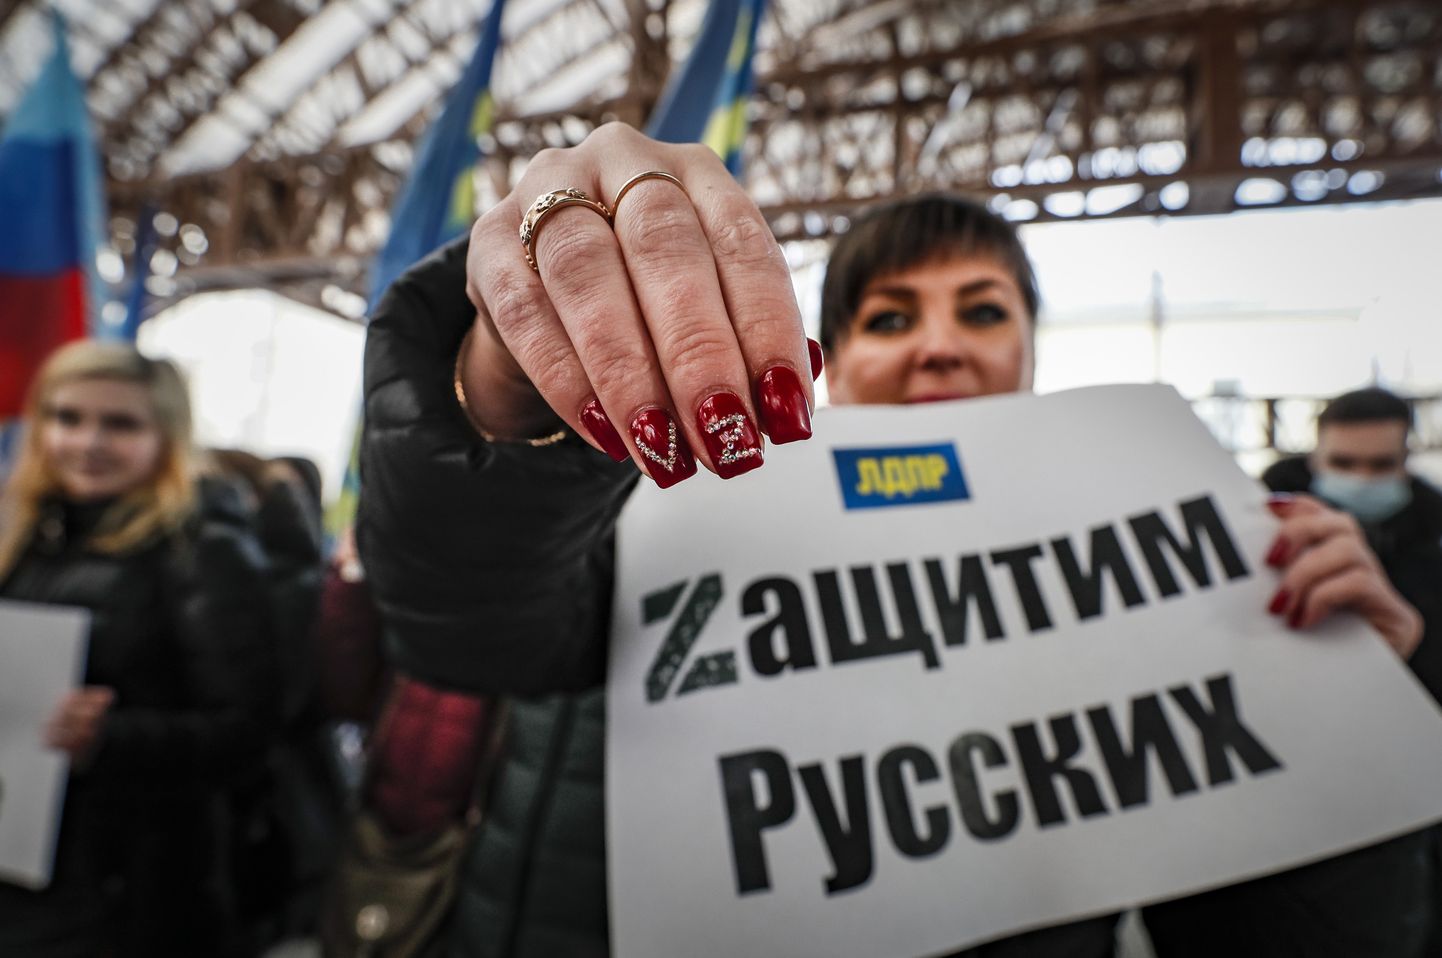 Vene naine hoidmas plakatit, millele on kirjutatud "Kaitskem venelasi". Samuti on naise küünel näha V- ja Z-tähti – sümboolikaid, mida kasutab Ukraina vastu sõdiv Vene sõjavägi.